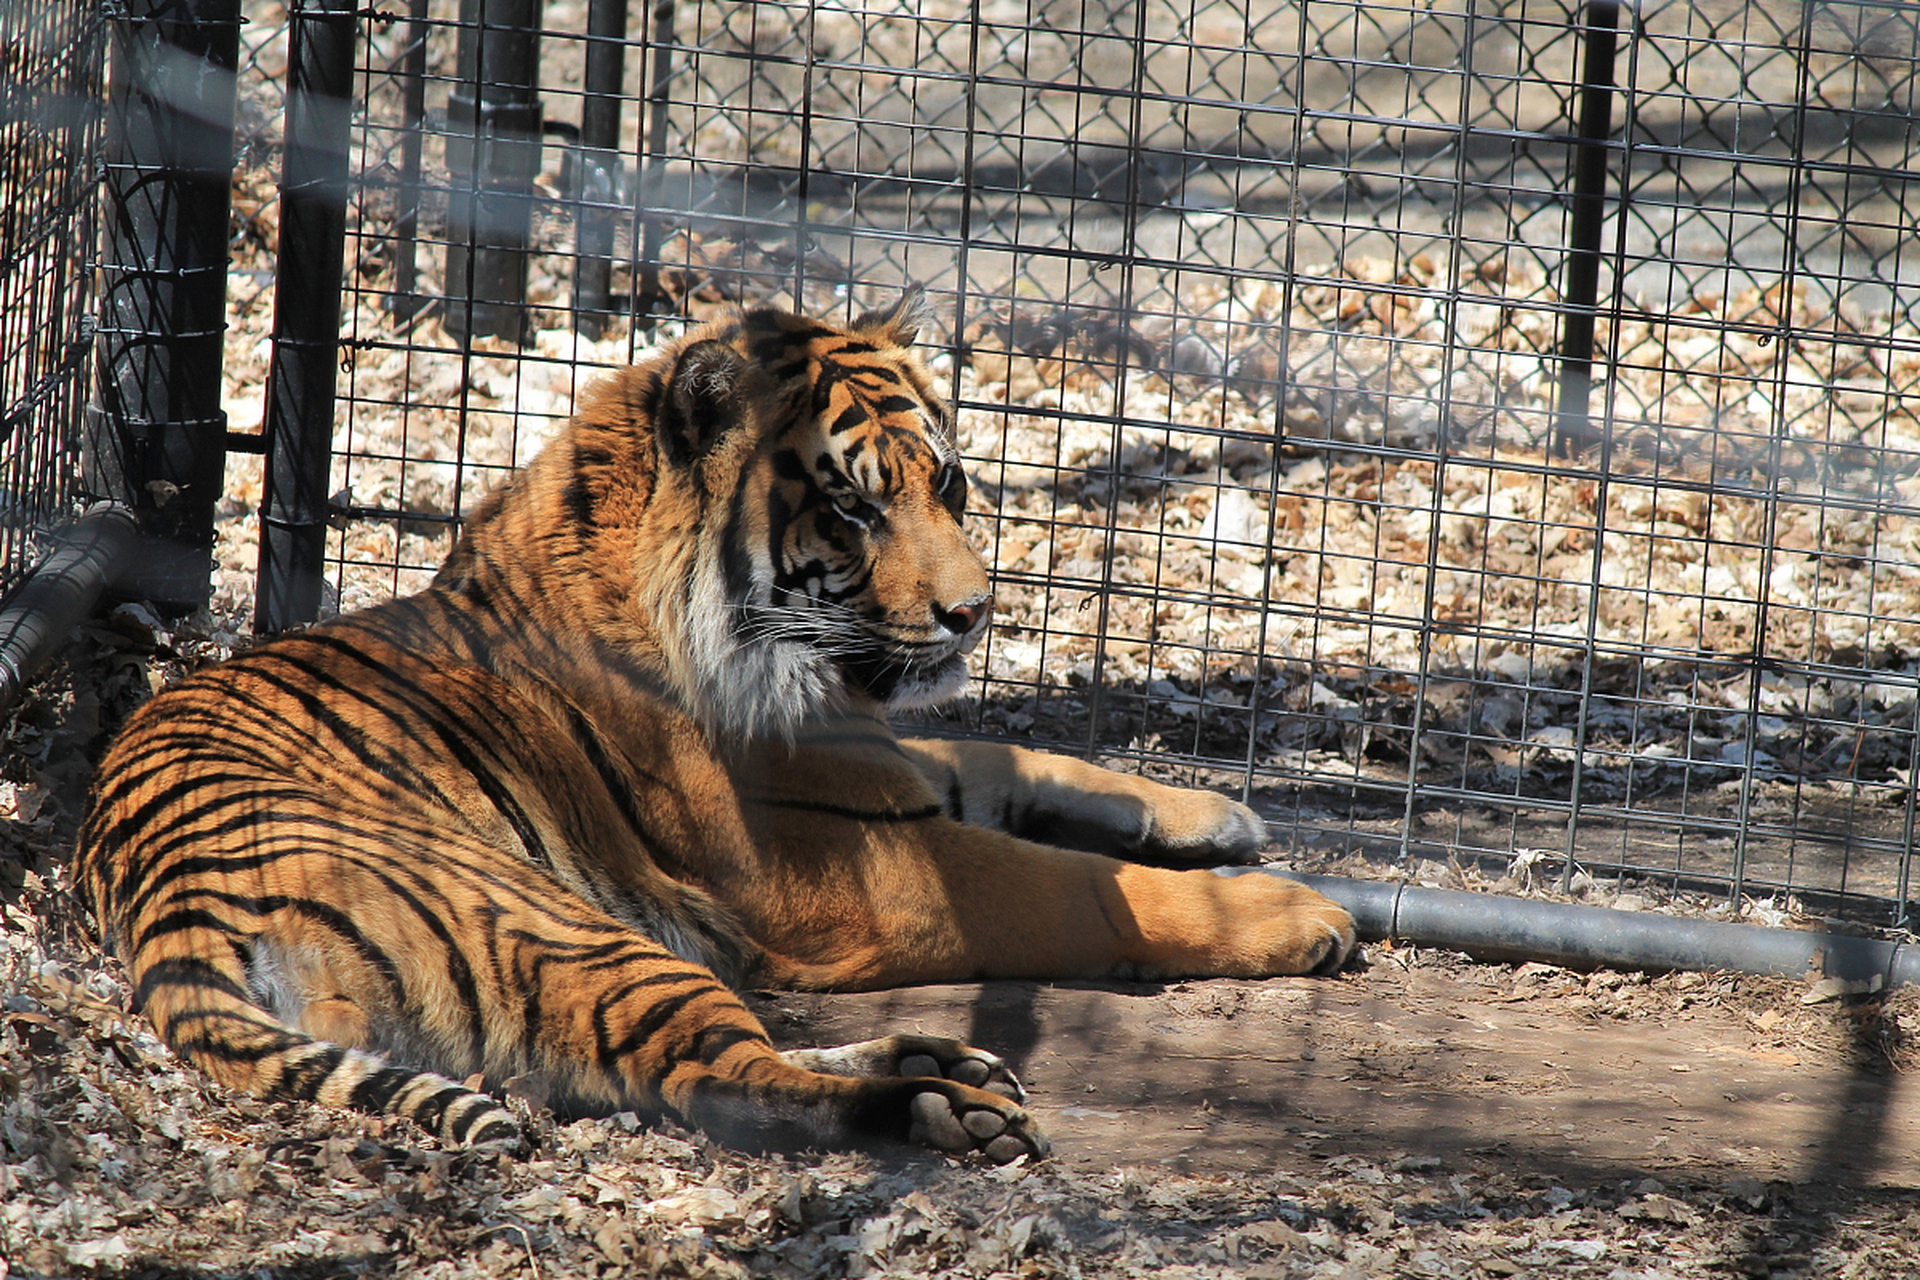 安徽阜阳野生动物园珍稀动物大量死亡事件深度调查 近日,一则关于安徽